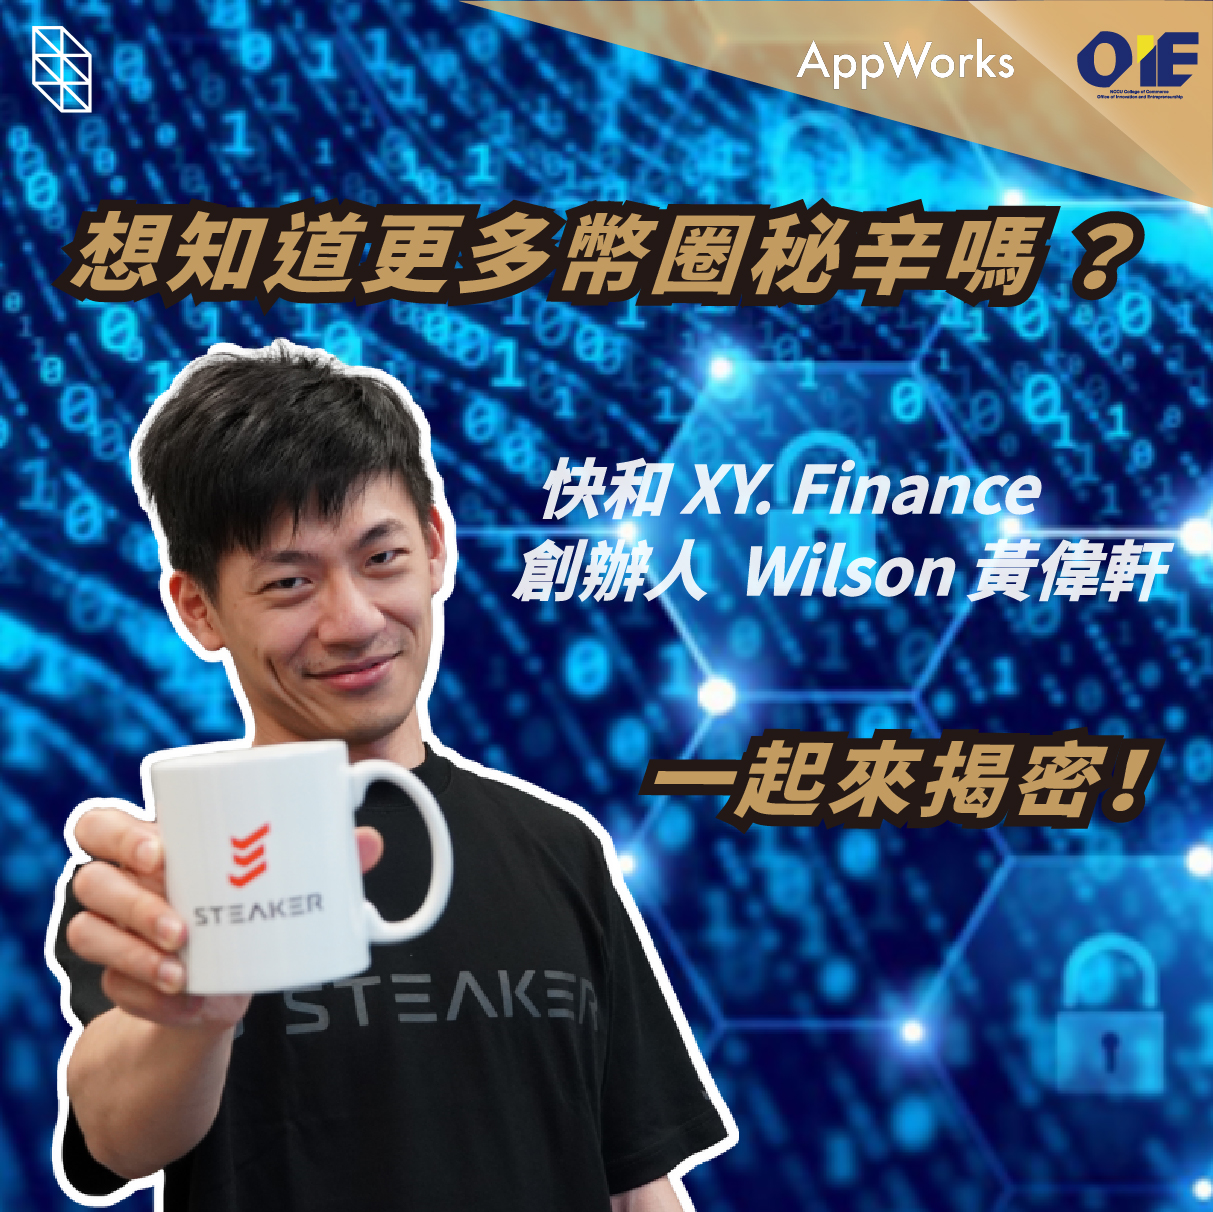 揭密台灣跨鏈聚合器！為用戶提供快速的跨鏈幣換服務-專訪 XY Finance 創辦人 黃偉軒